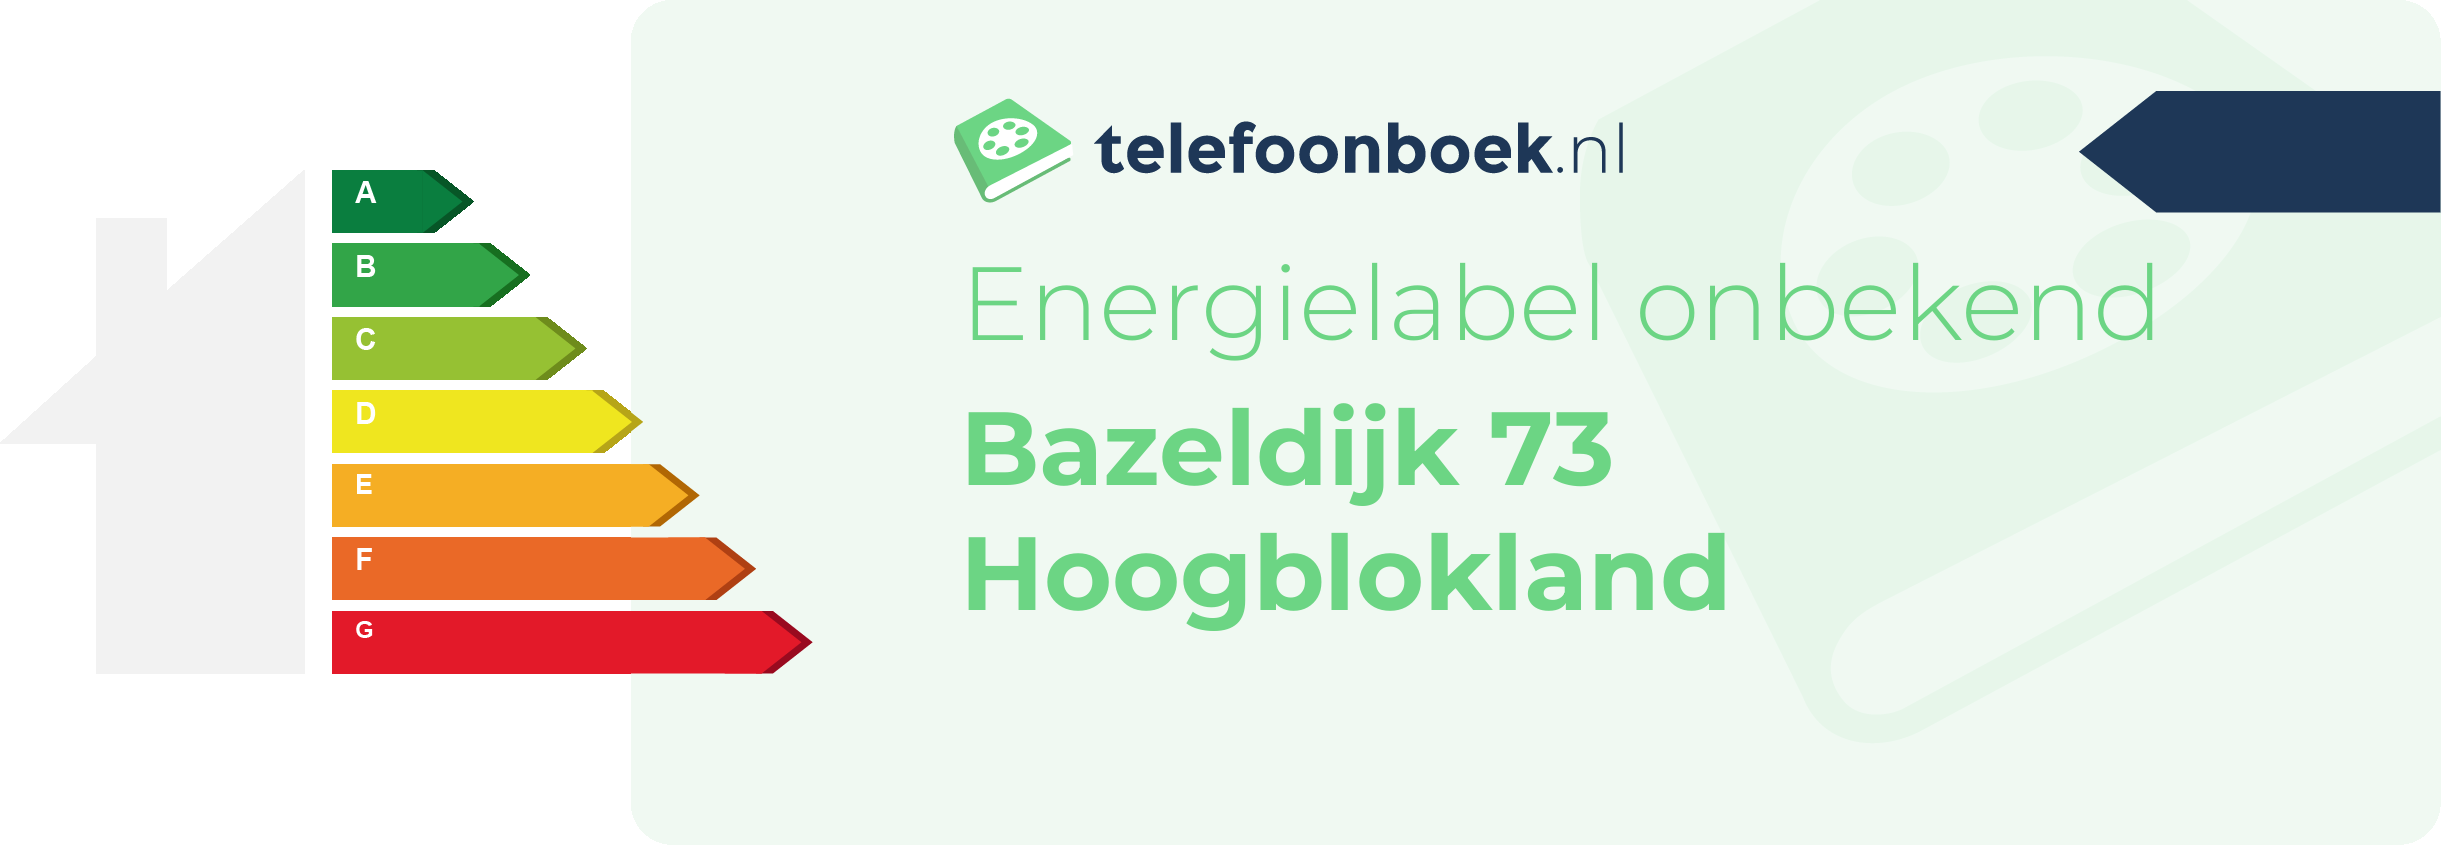 Energielabel Bazeldijk 73 Hoogblokland